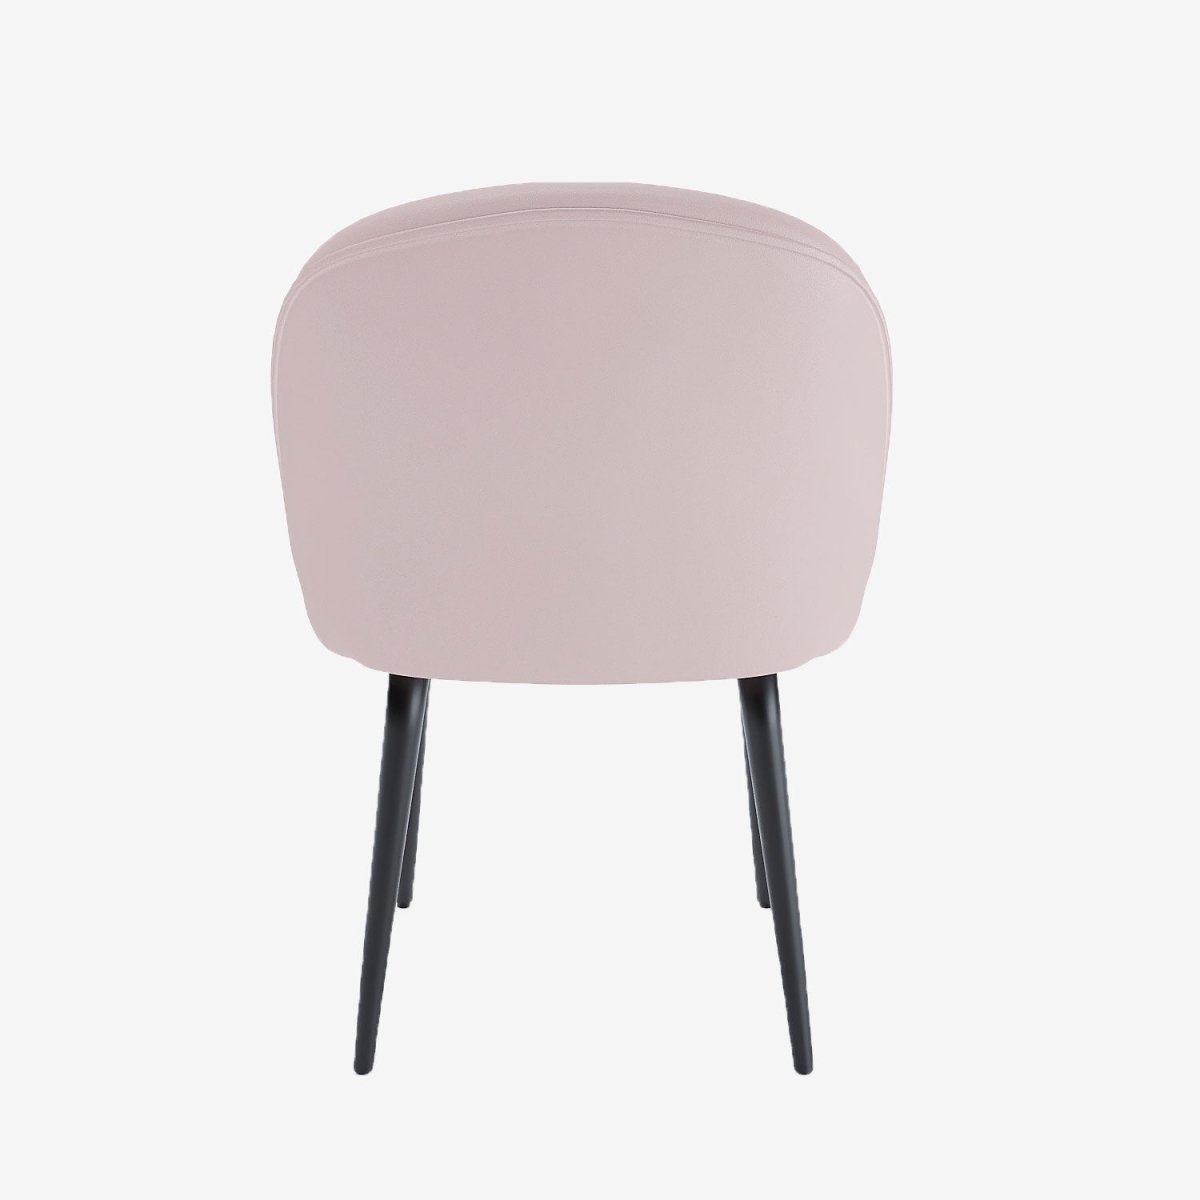 Chaises de salle à manger confortable pour le dos en velours rose & métal noir - Potiron Paris, Potiron Paris, la déco des intérieurs hauts en couleurs